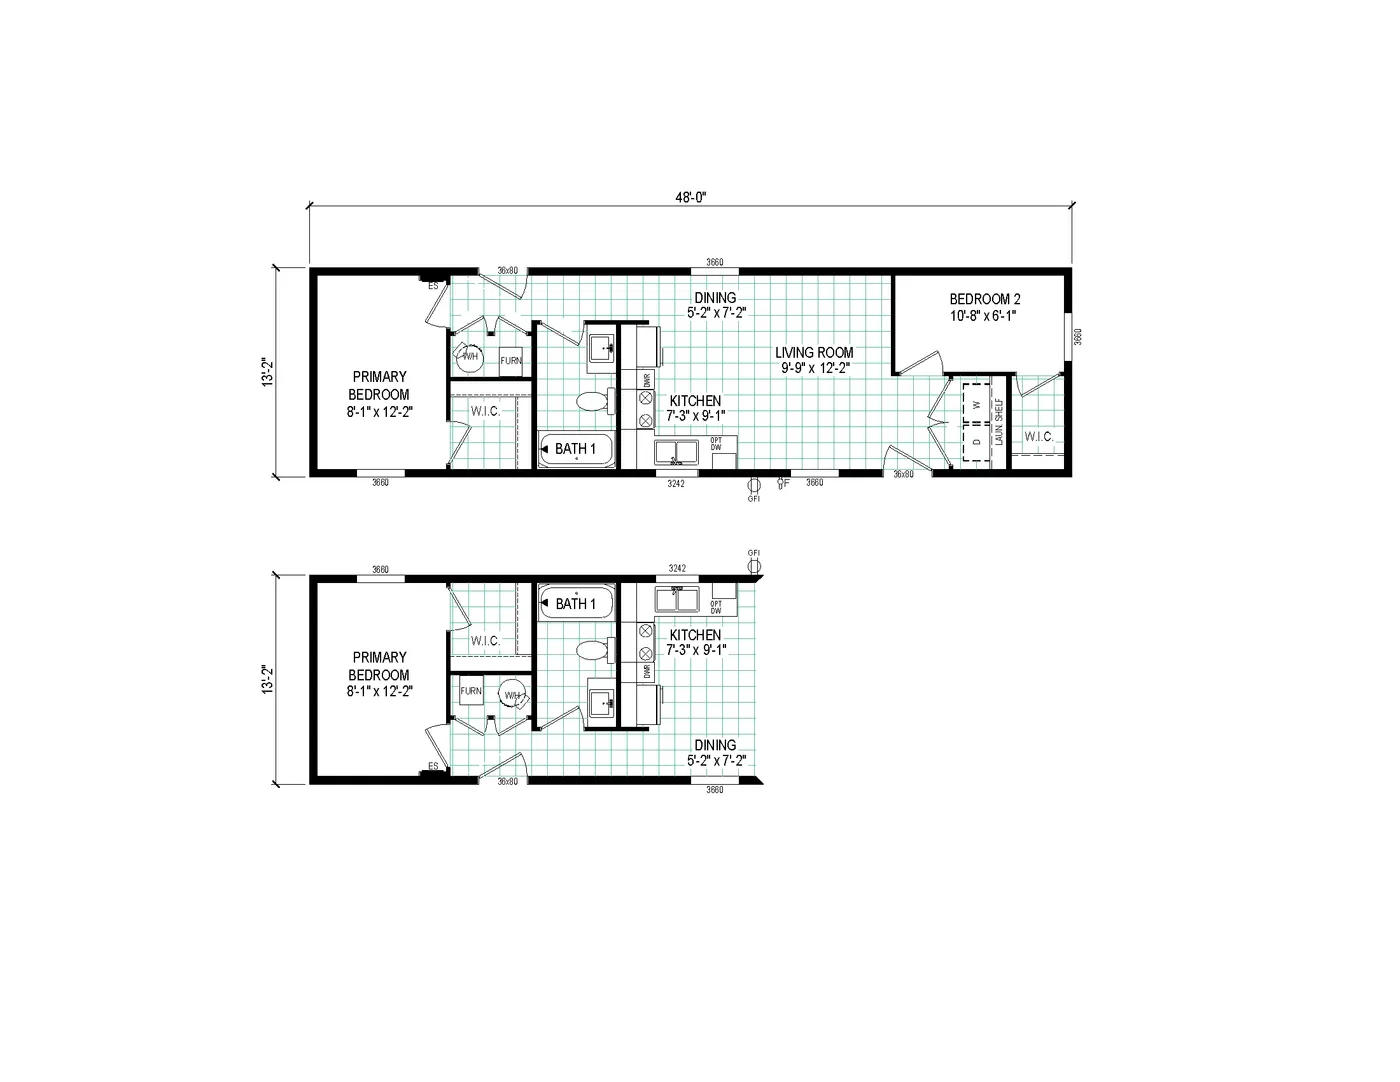 Floor Plan Standard Floor Plan